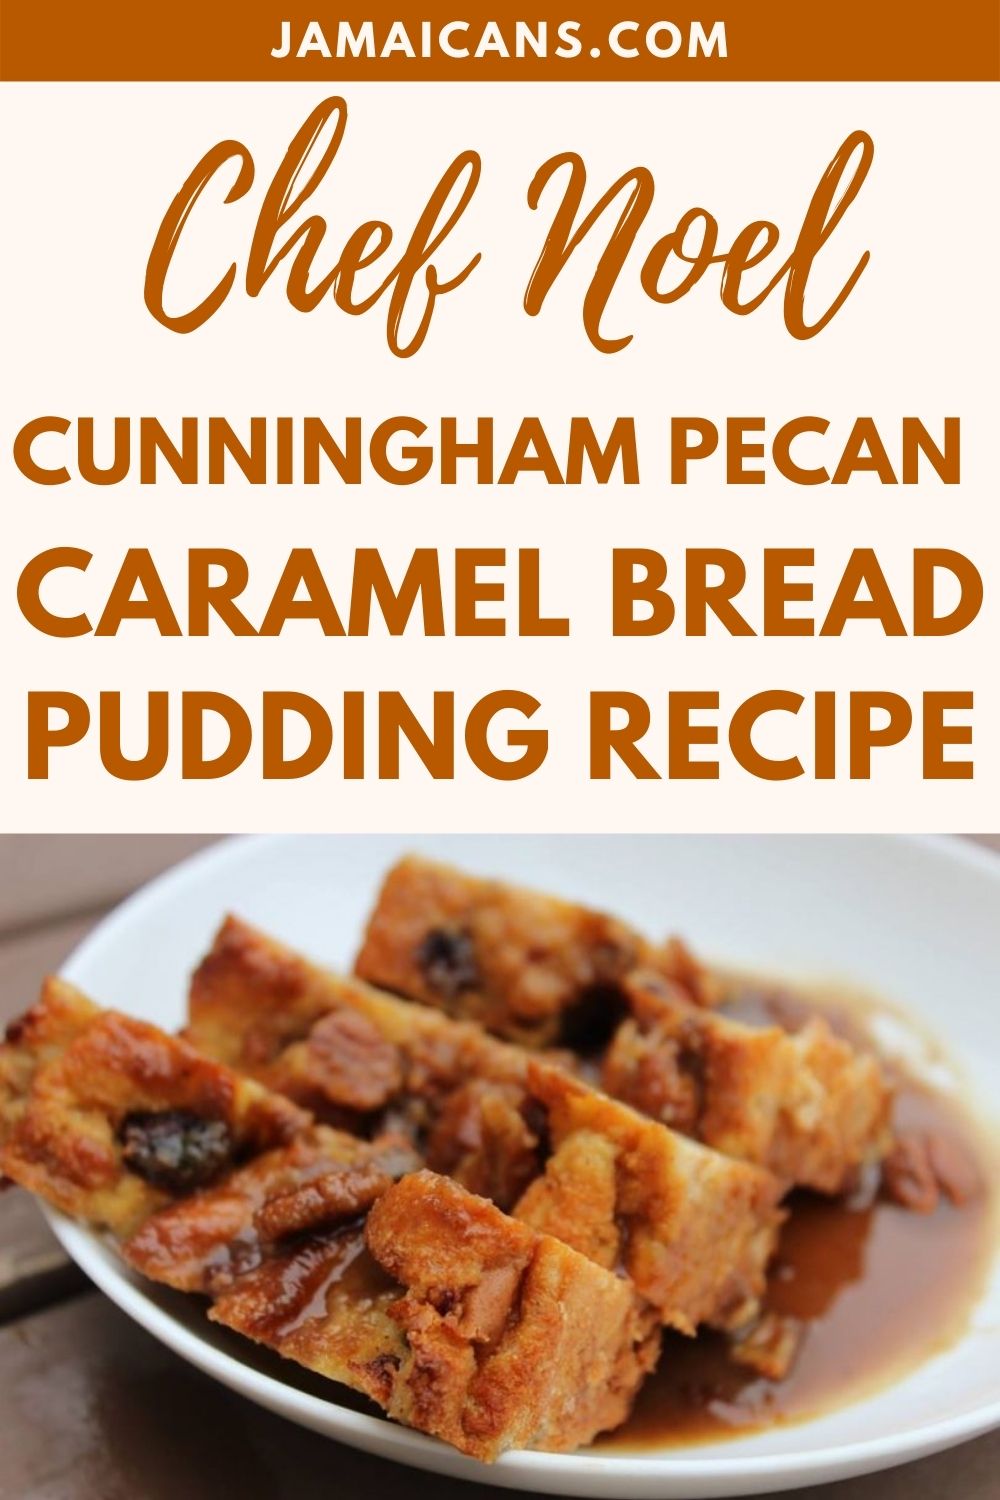 Chef Noel Cunningham Pecan Caramel Bread Pudding Recipe